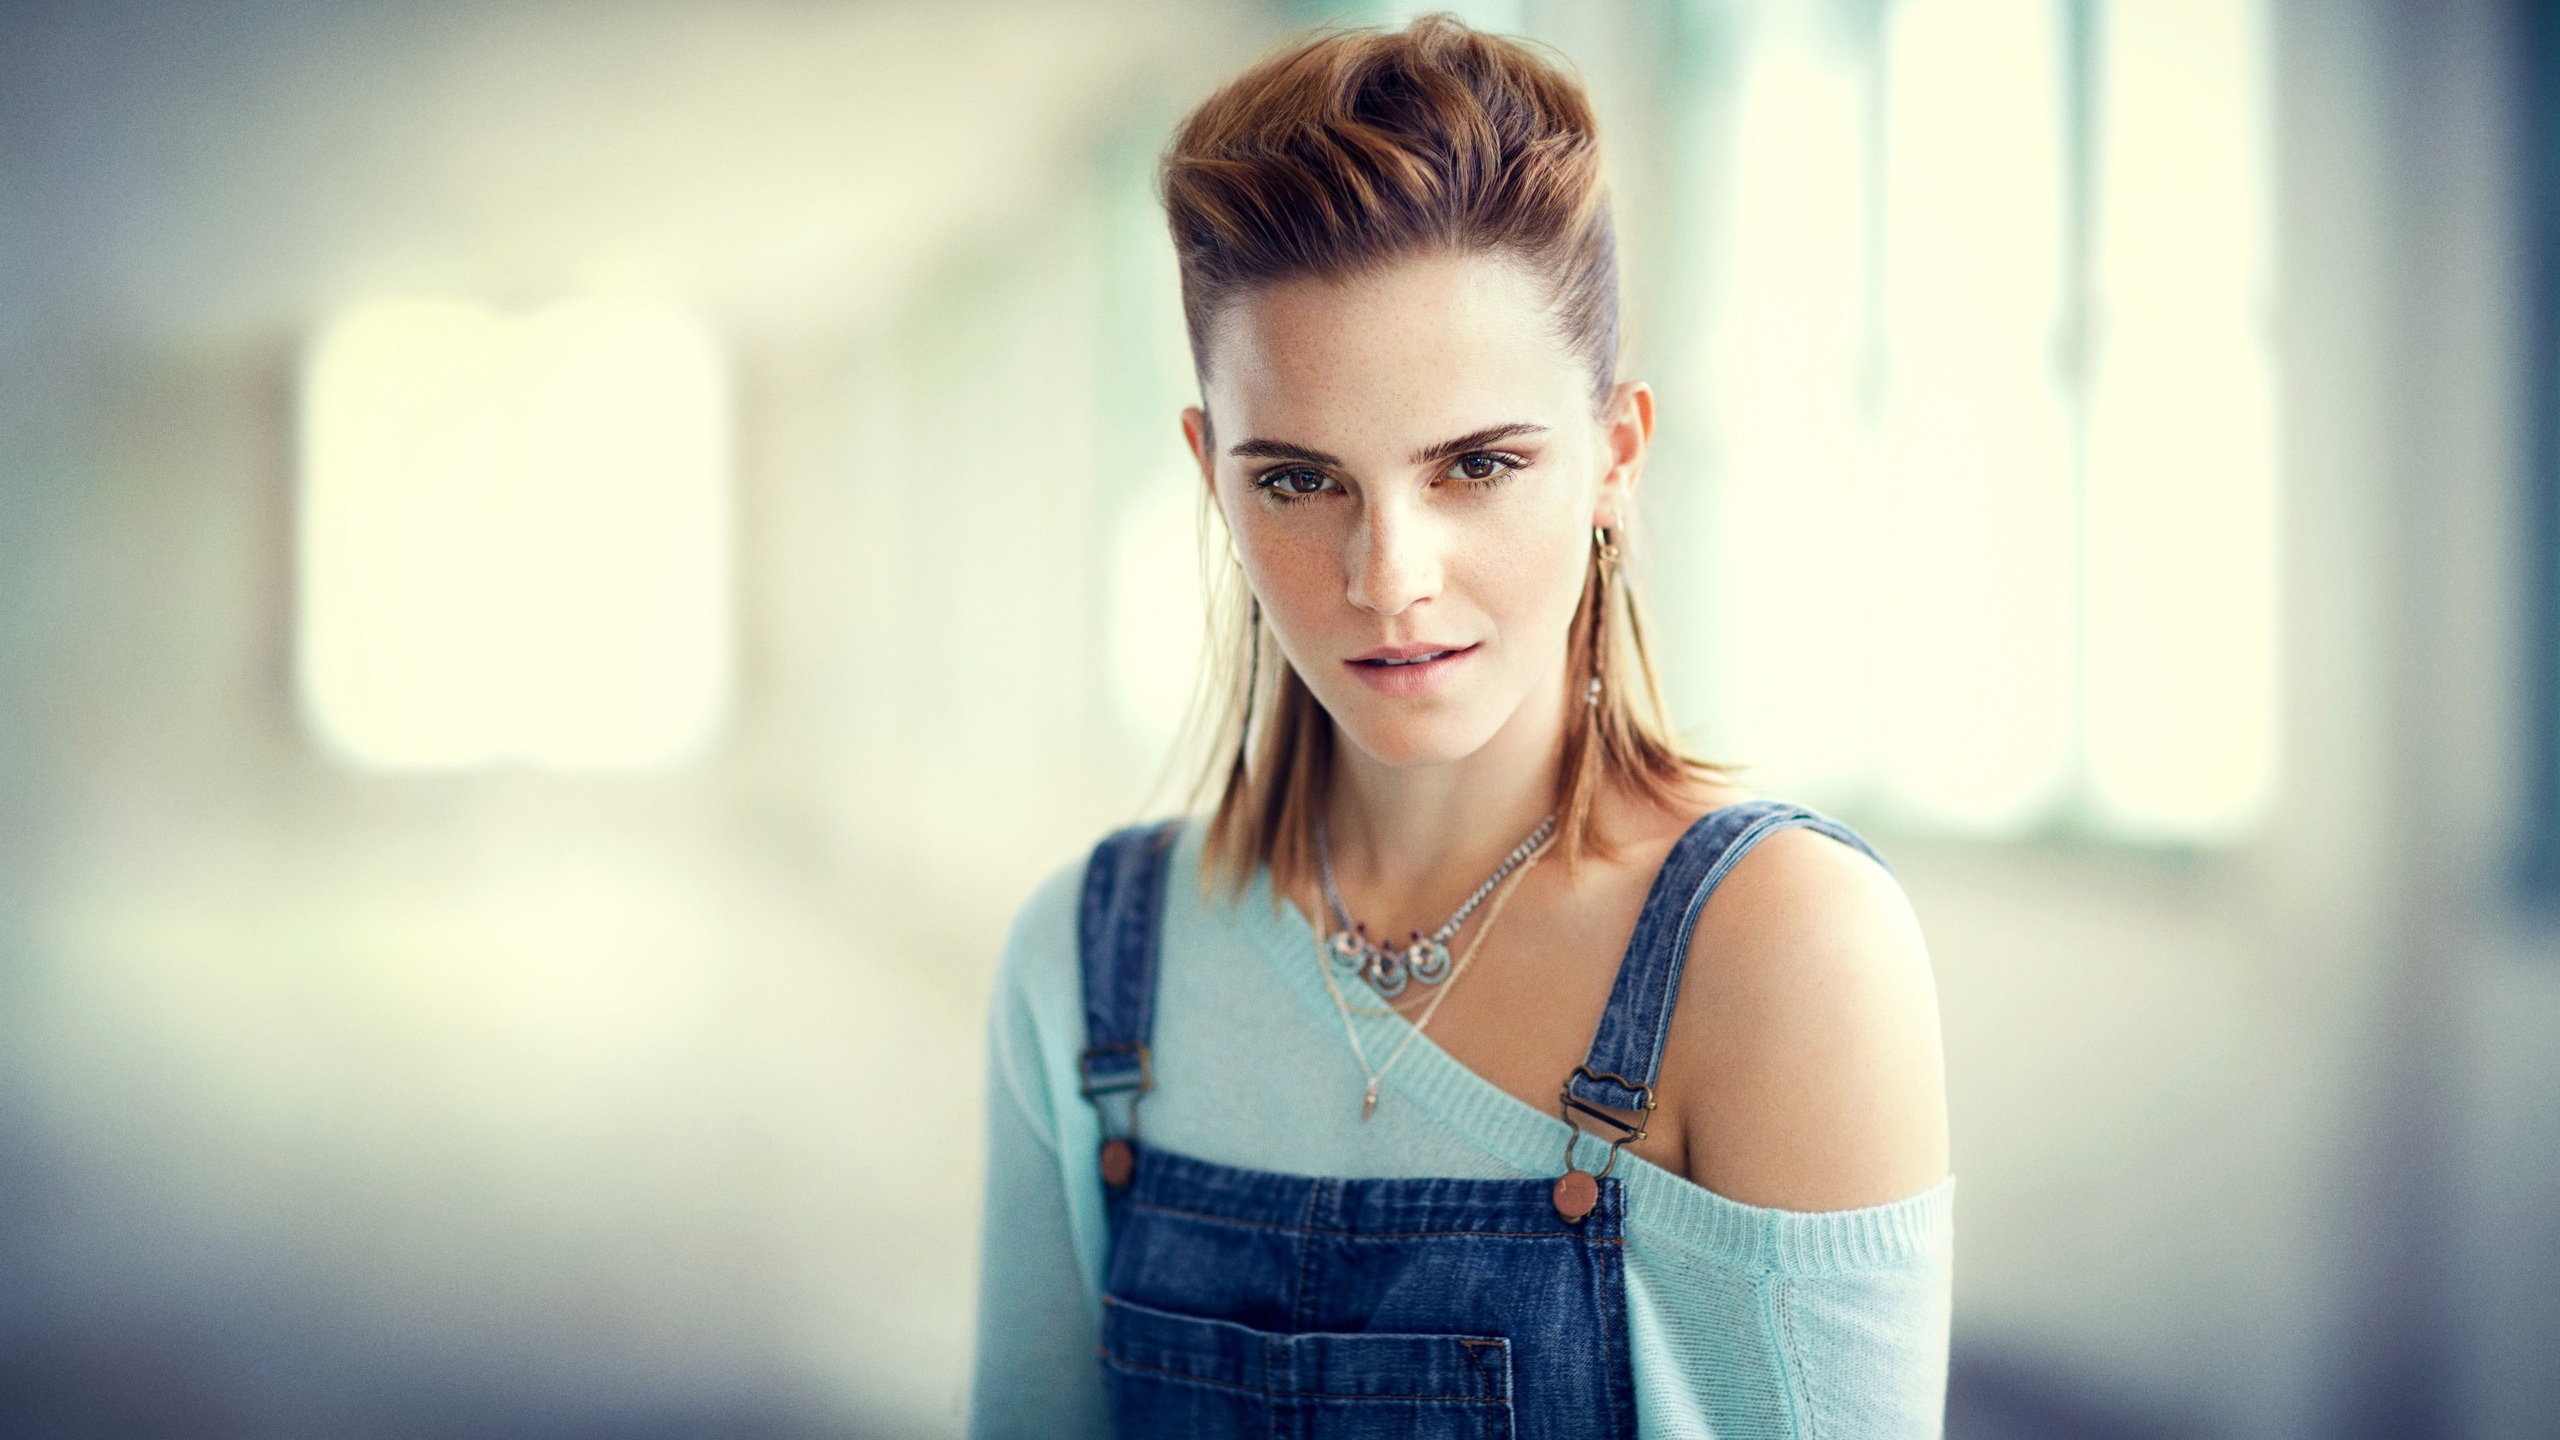 10 Best Emma Watson Hd Wallpaper FULL HD 1080p For PC Desktop